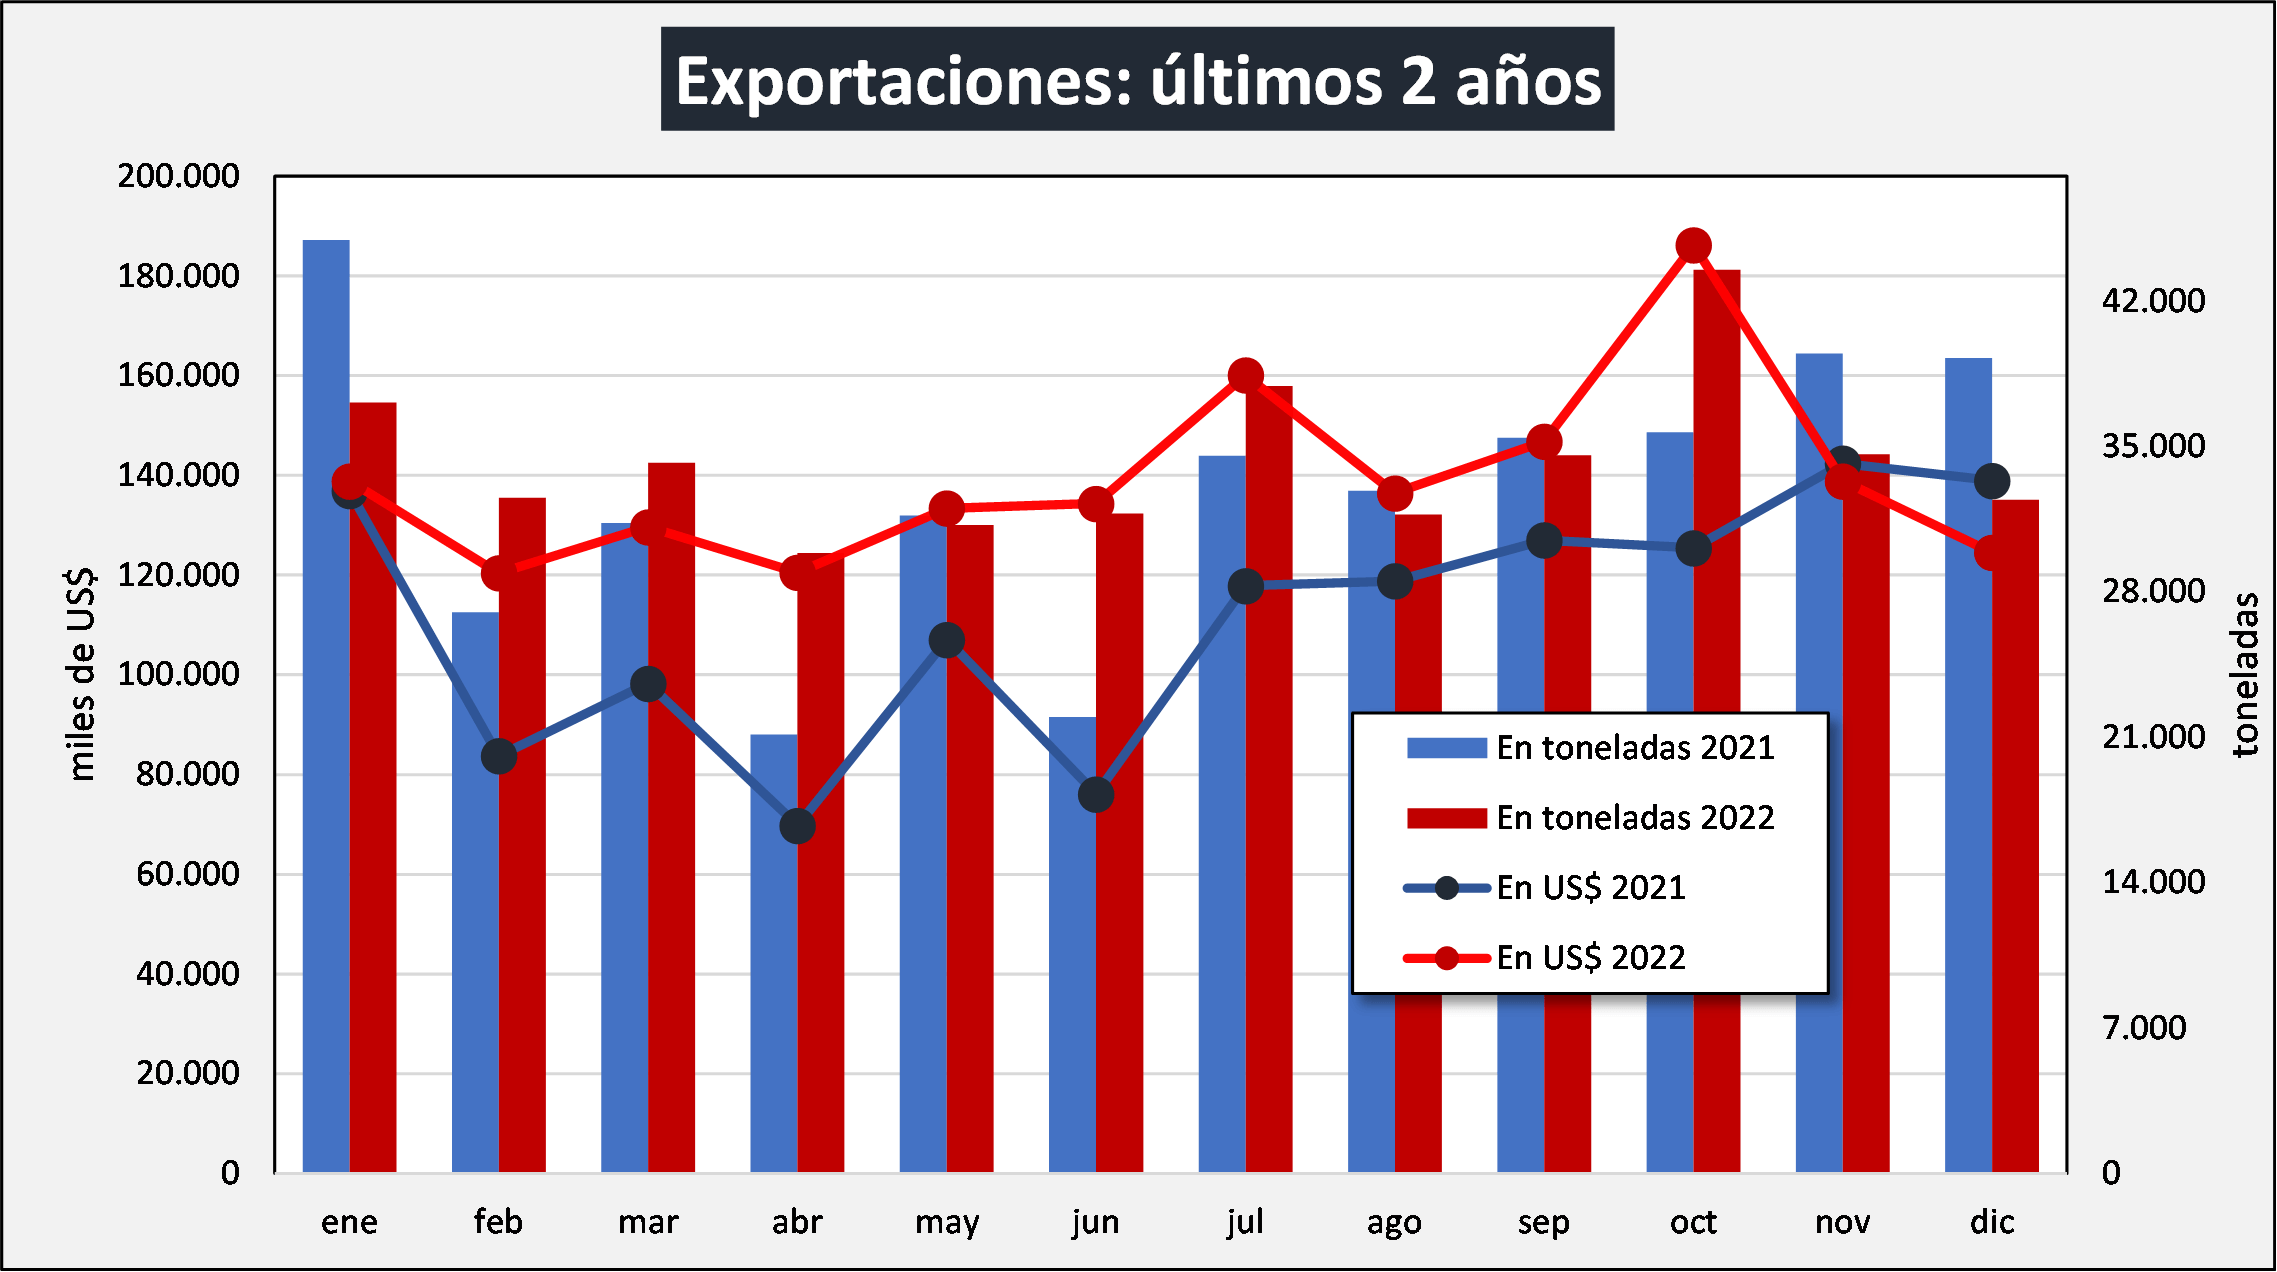 OCLA EXPORTACIONES ULTIMOS 2 ANOS